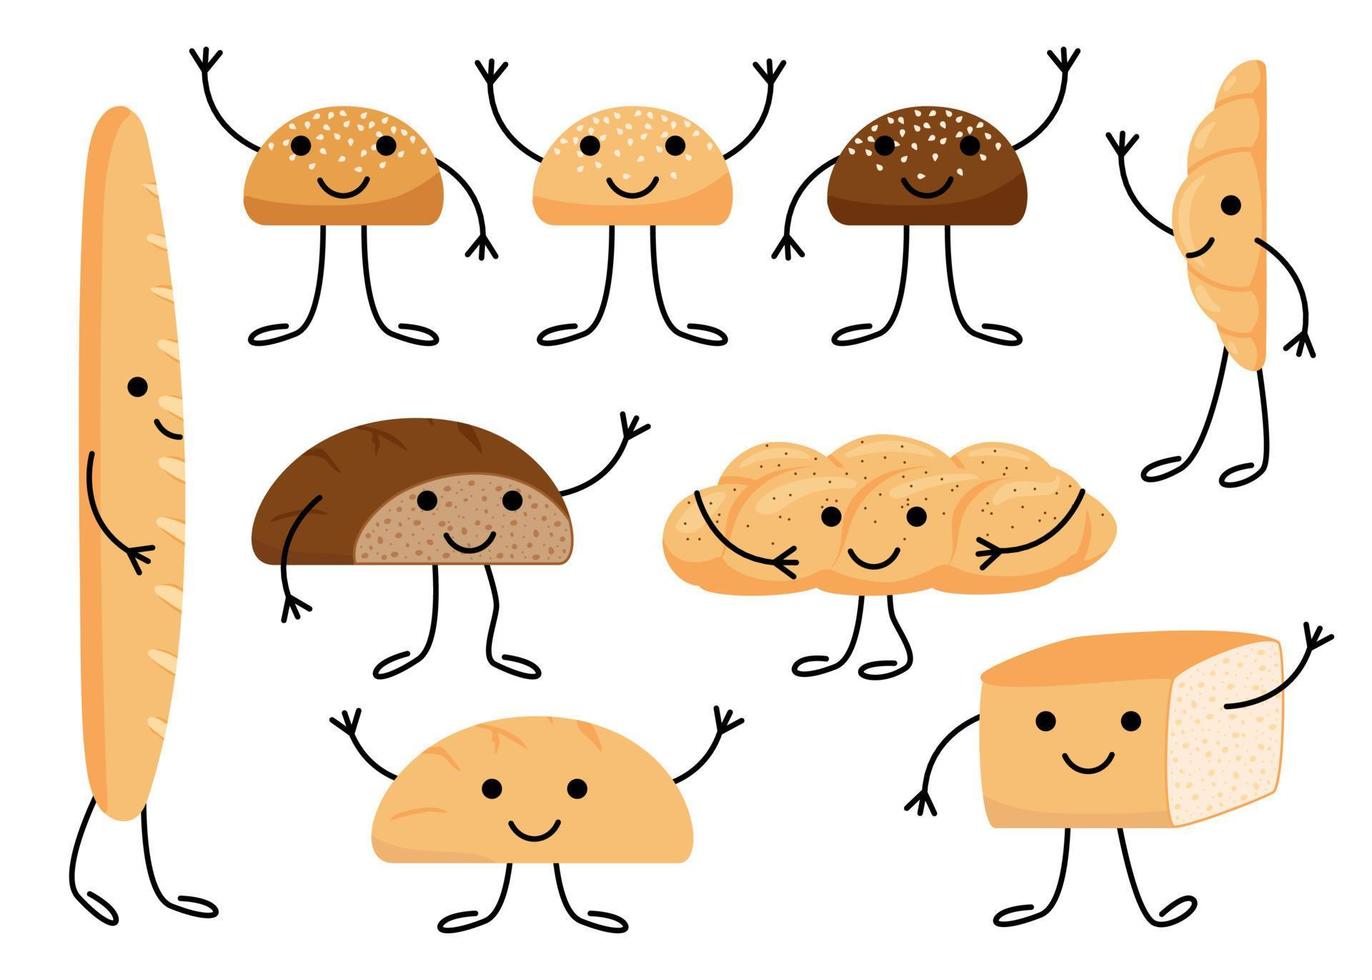 personnage de pain avec visage, groupe de manger mignon. savoureuses pâtisseries de boulangerie kawaii, ensemble de pains de dessin animé. chignon heureux pour hamburger, pain, brique à pain, croissant, pain grillé, baguette française, challah. vecteur